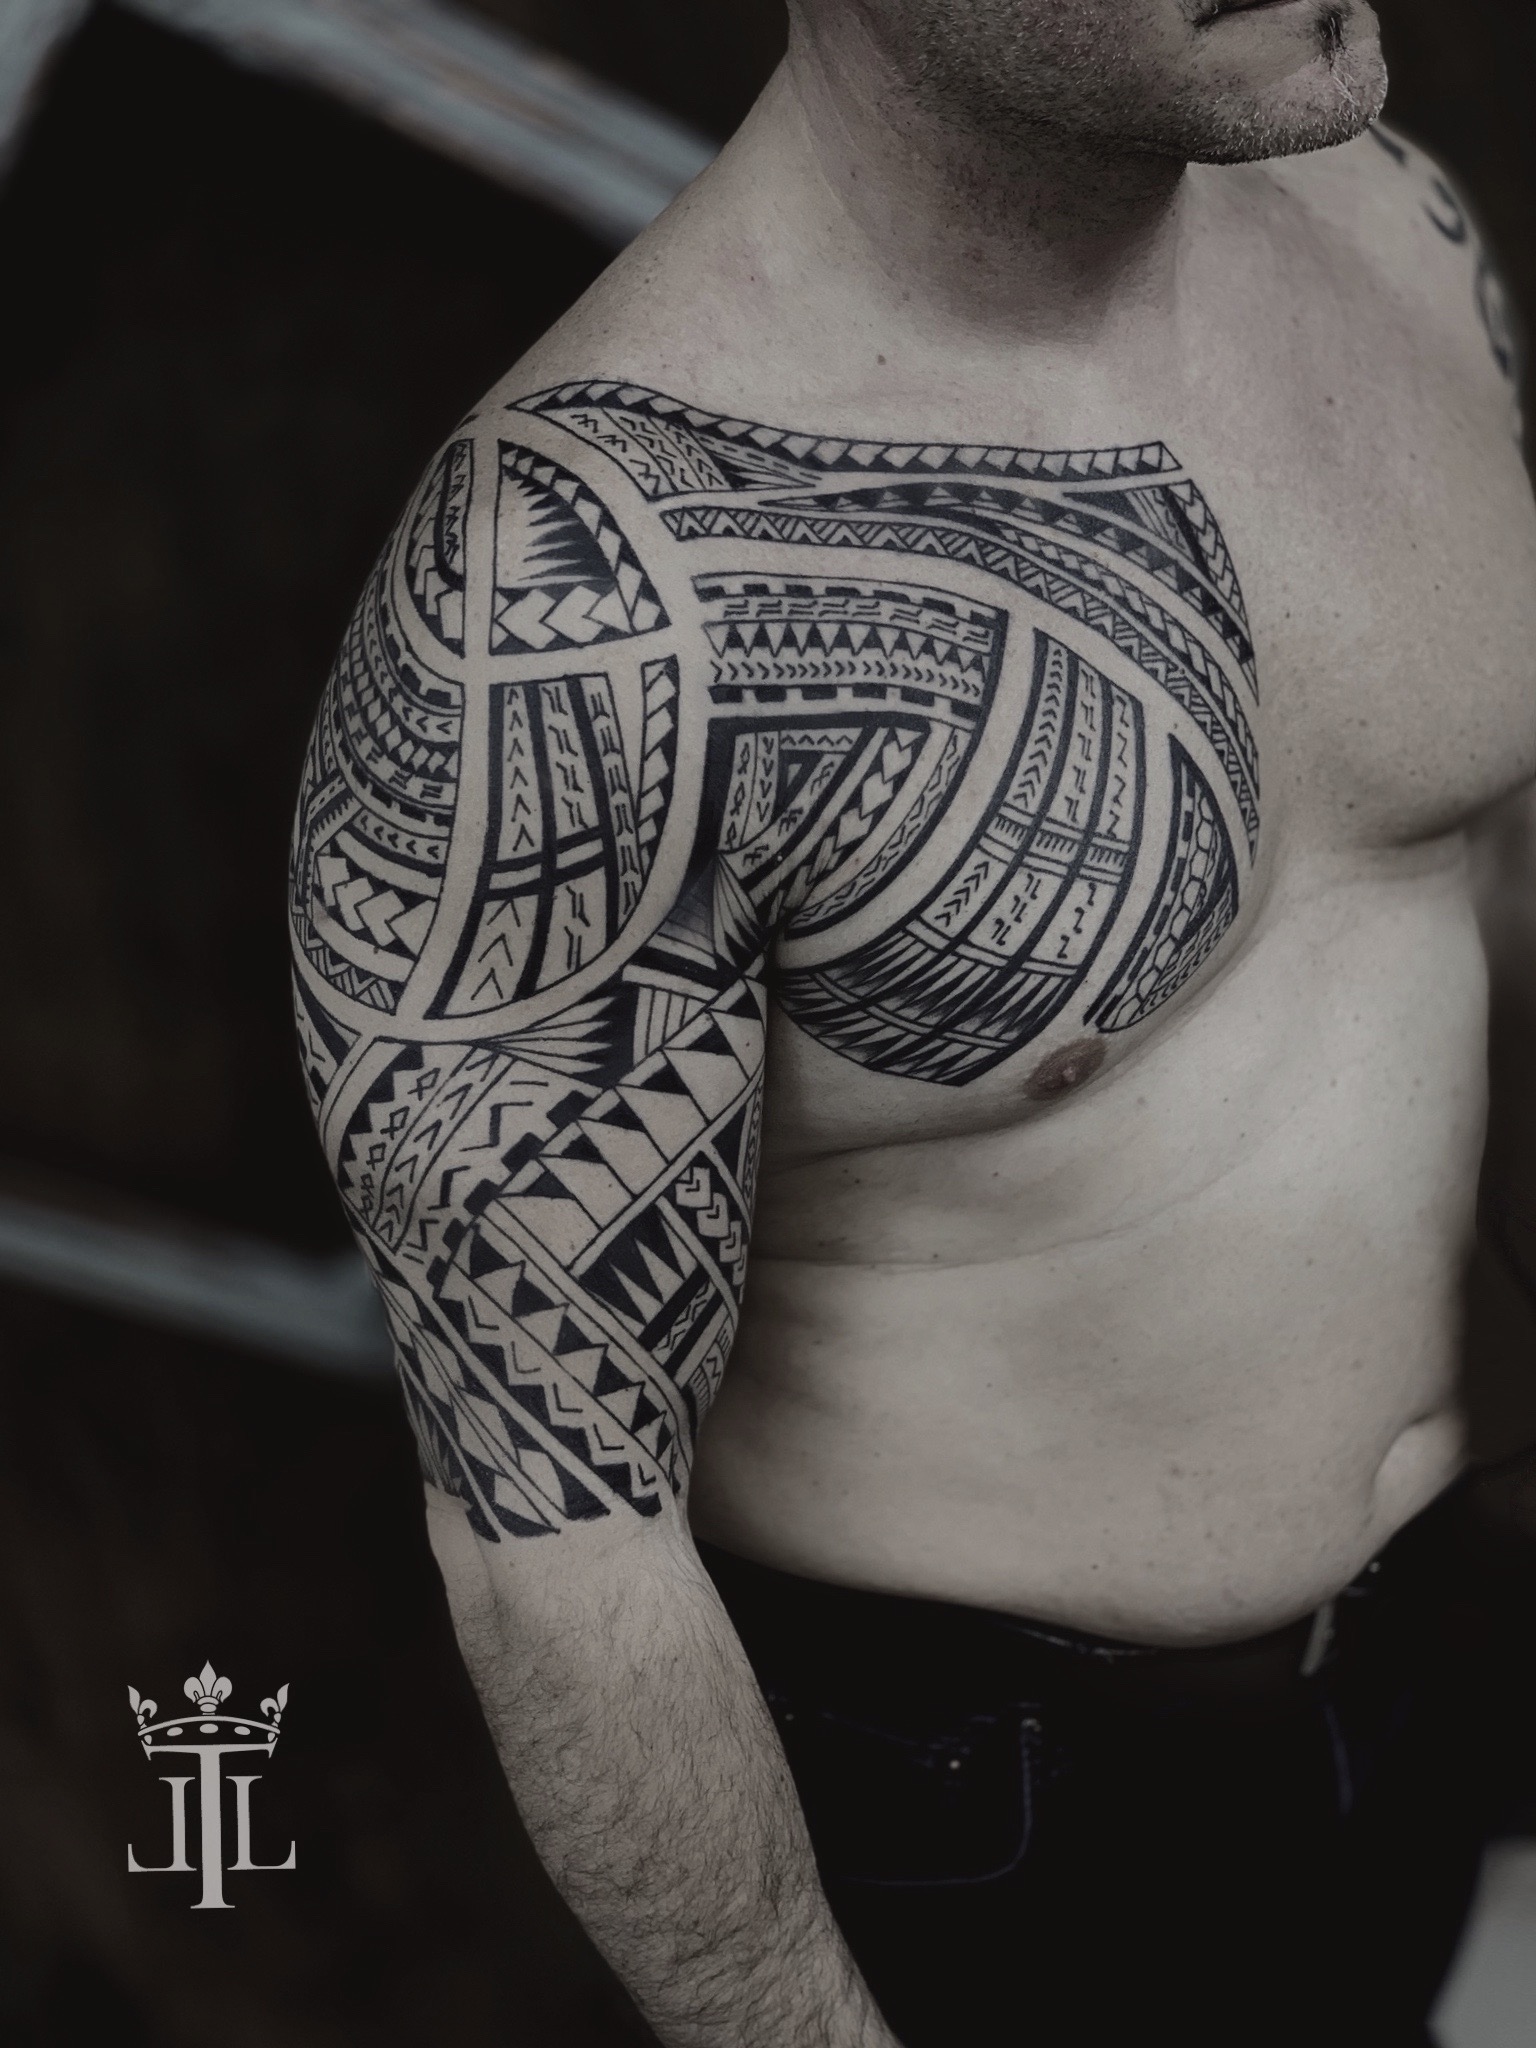 Tattoo Hawaii Maori Polynesian Tribal Vector Images (over 1,000)